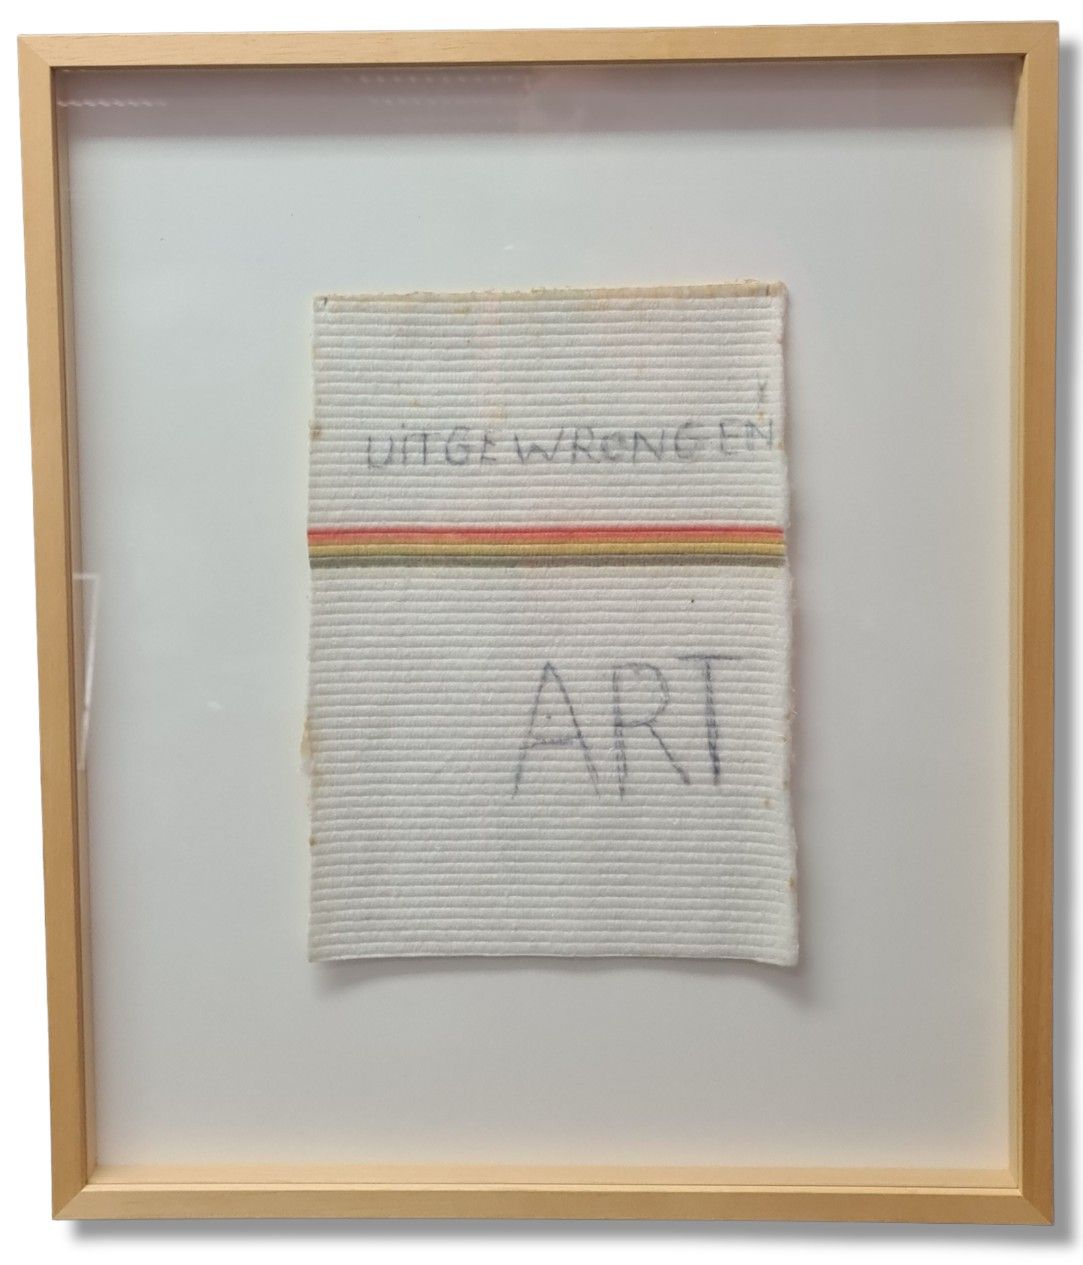 Jan FABRE( 1958- ) 
Jan FABRE( 1958- )

UITGEWRONGEN ART.

"Bic art".

Morceau d&hellip;